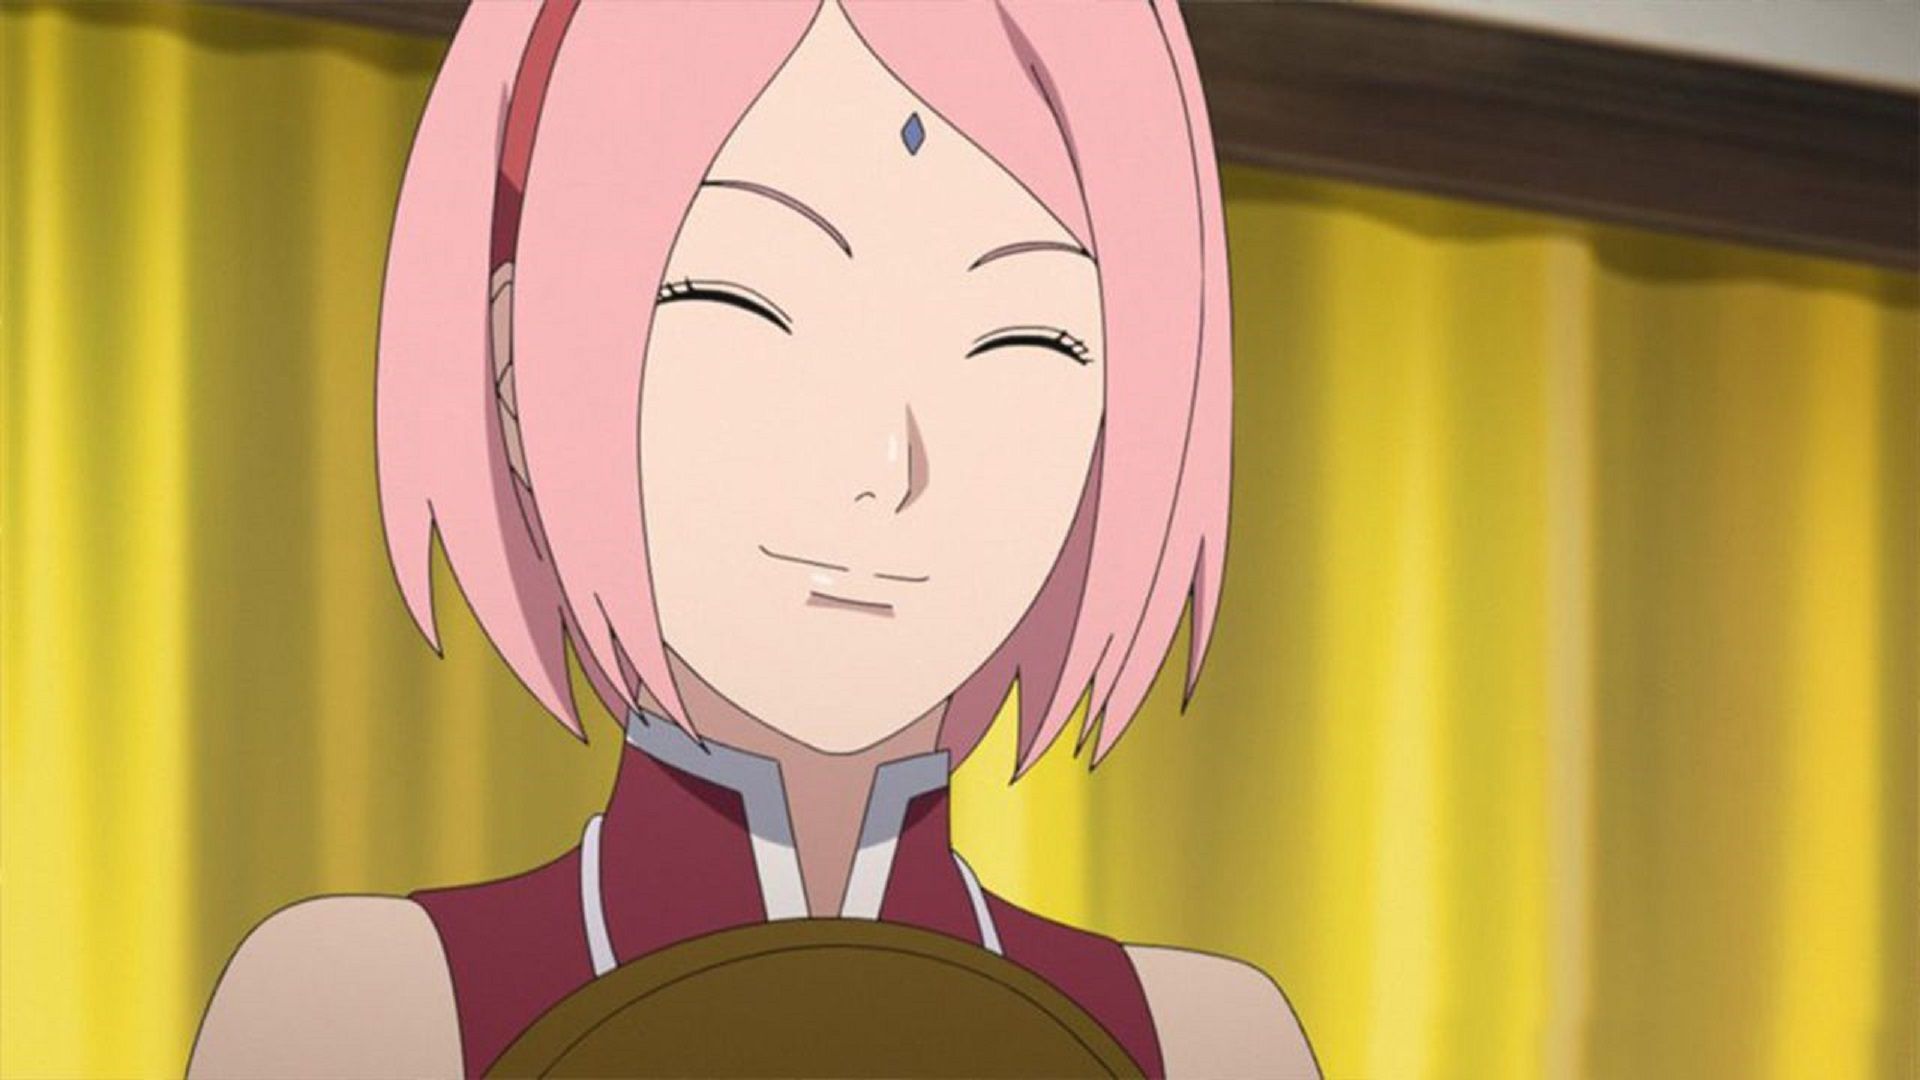 Sakura (Image via Studio Pierrot, Naruto)